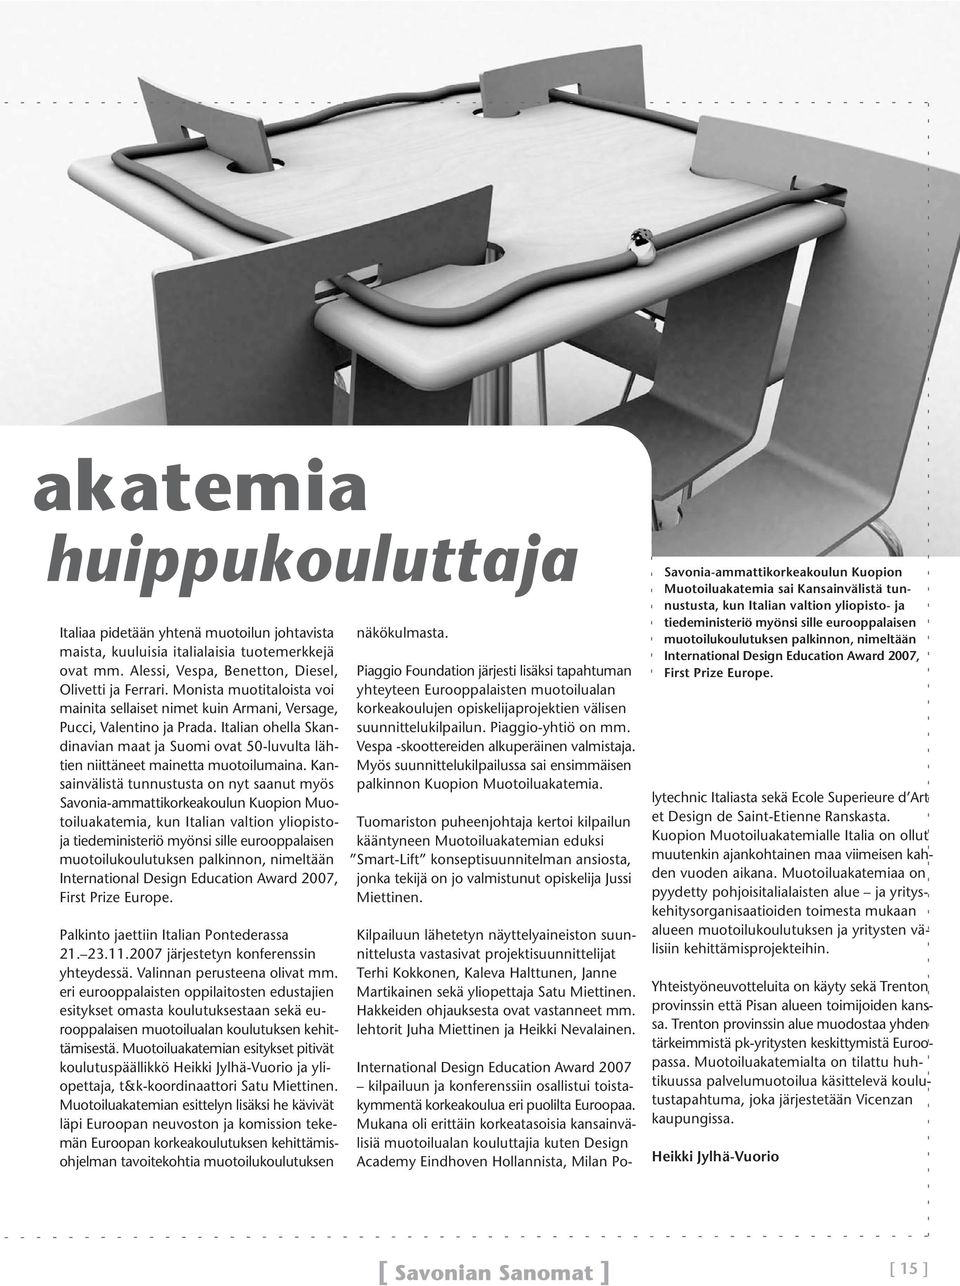 Kansainvälistä tunnustusta on nyt saanut myös Savonia-ammattikorkeakoulun Kuopion Muotoiluakatemia, kun Italian valtion yliopistoja tiedeministeriö myönsi sille eurooppalaisen muotoilukoulutuksen